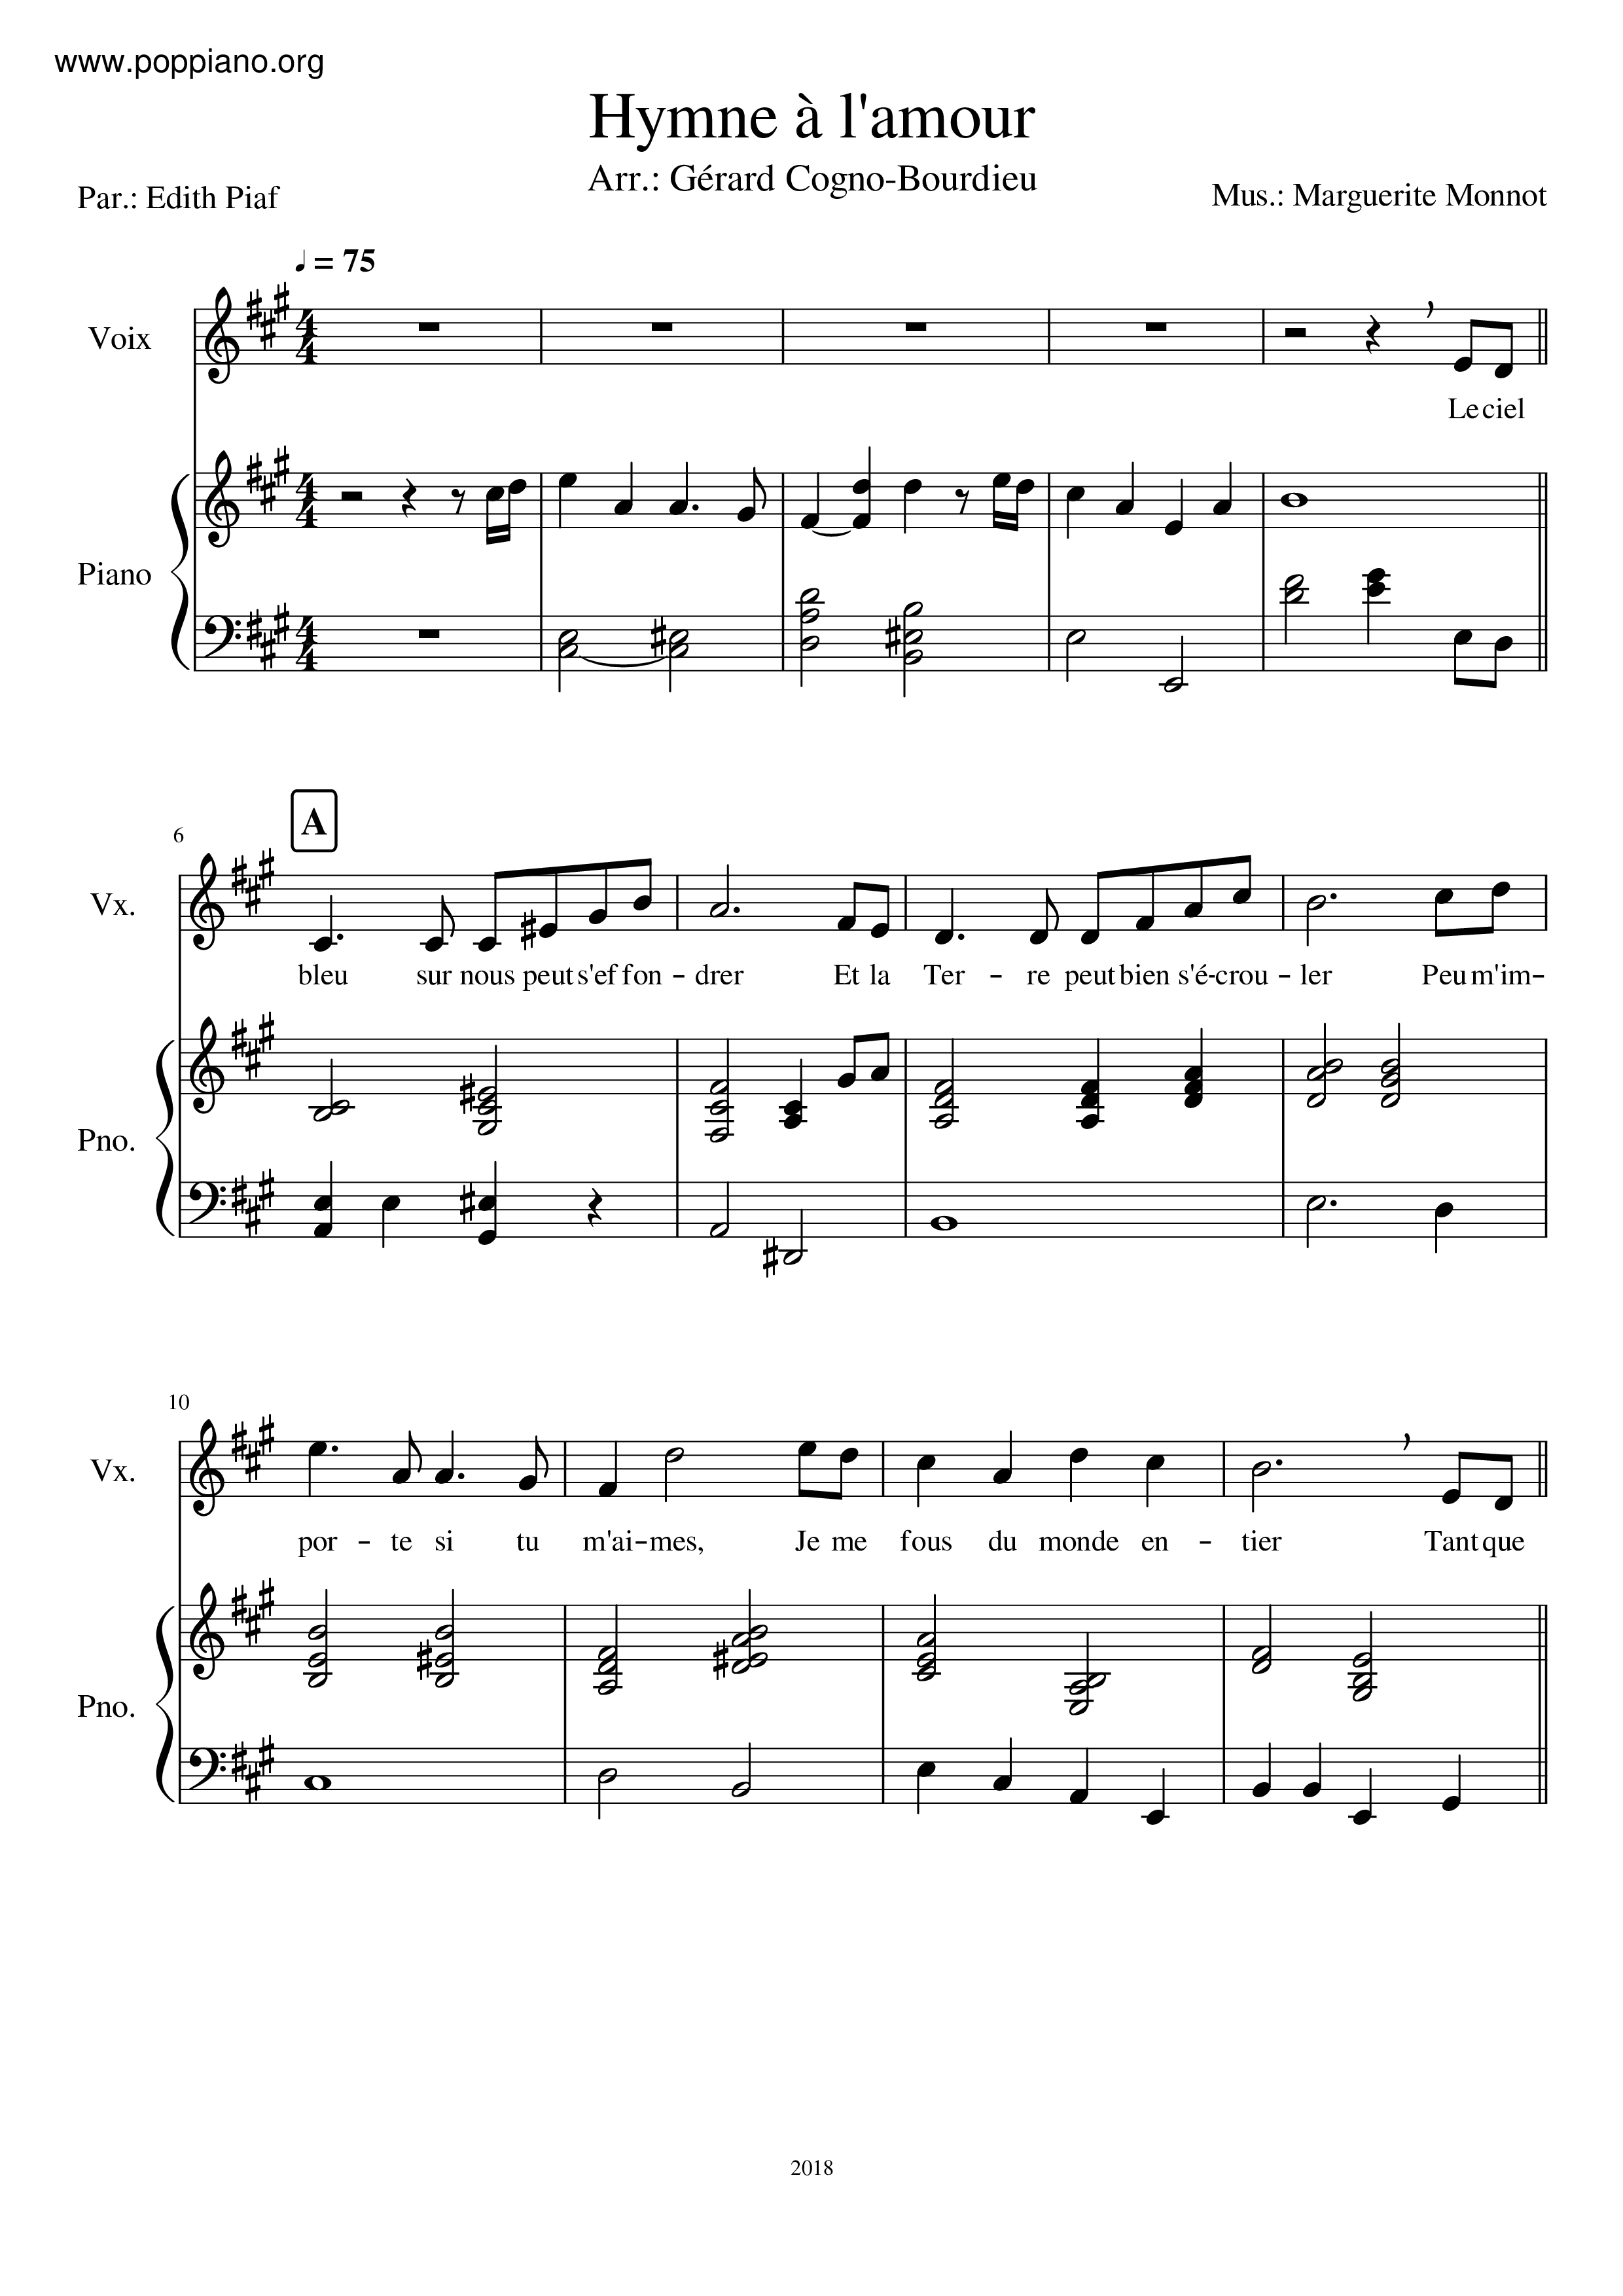 Hymne A L'amourピアノ譜